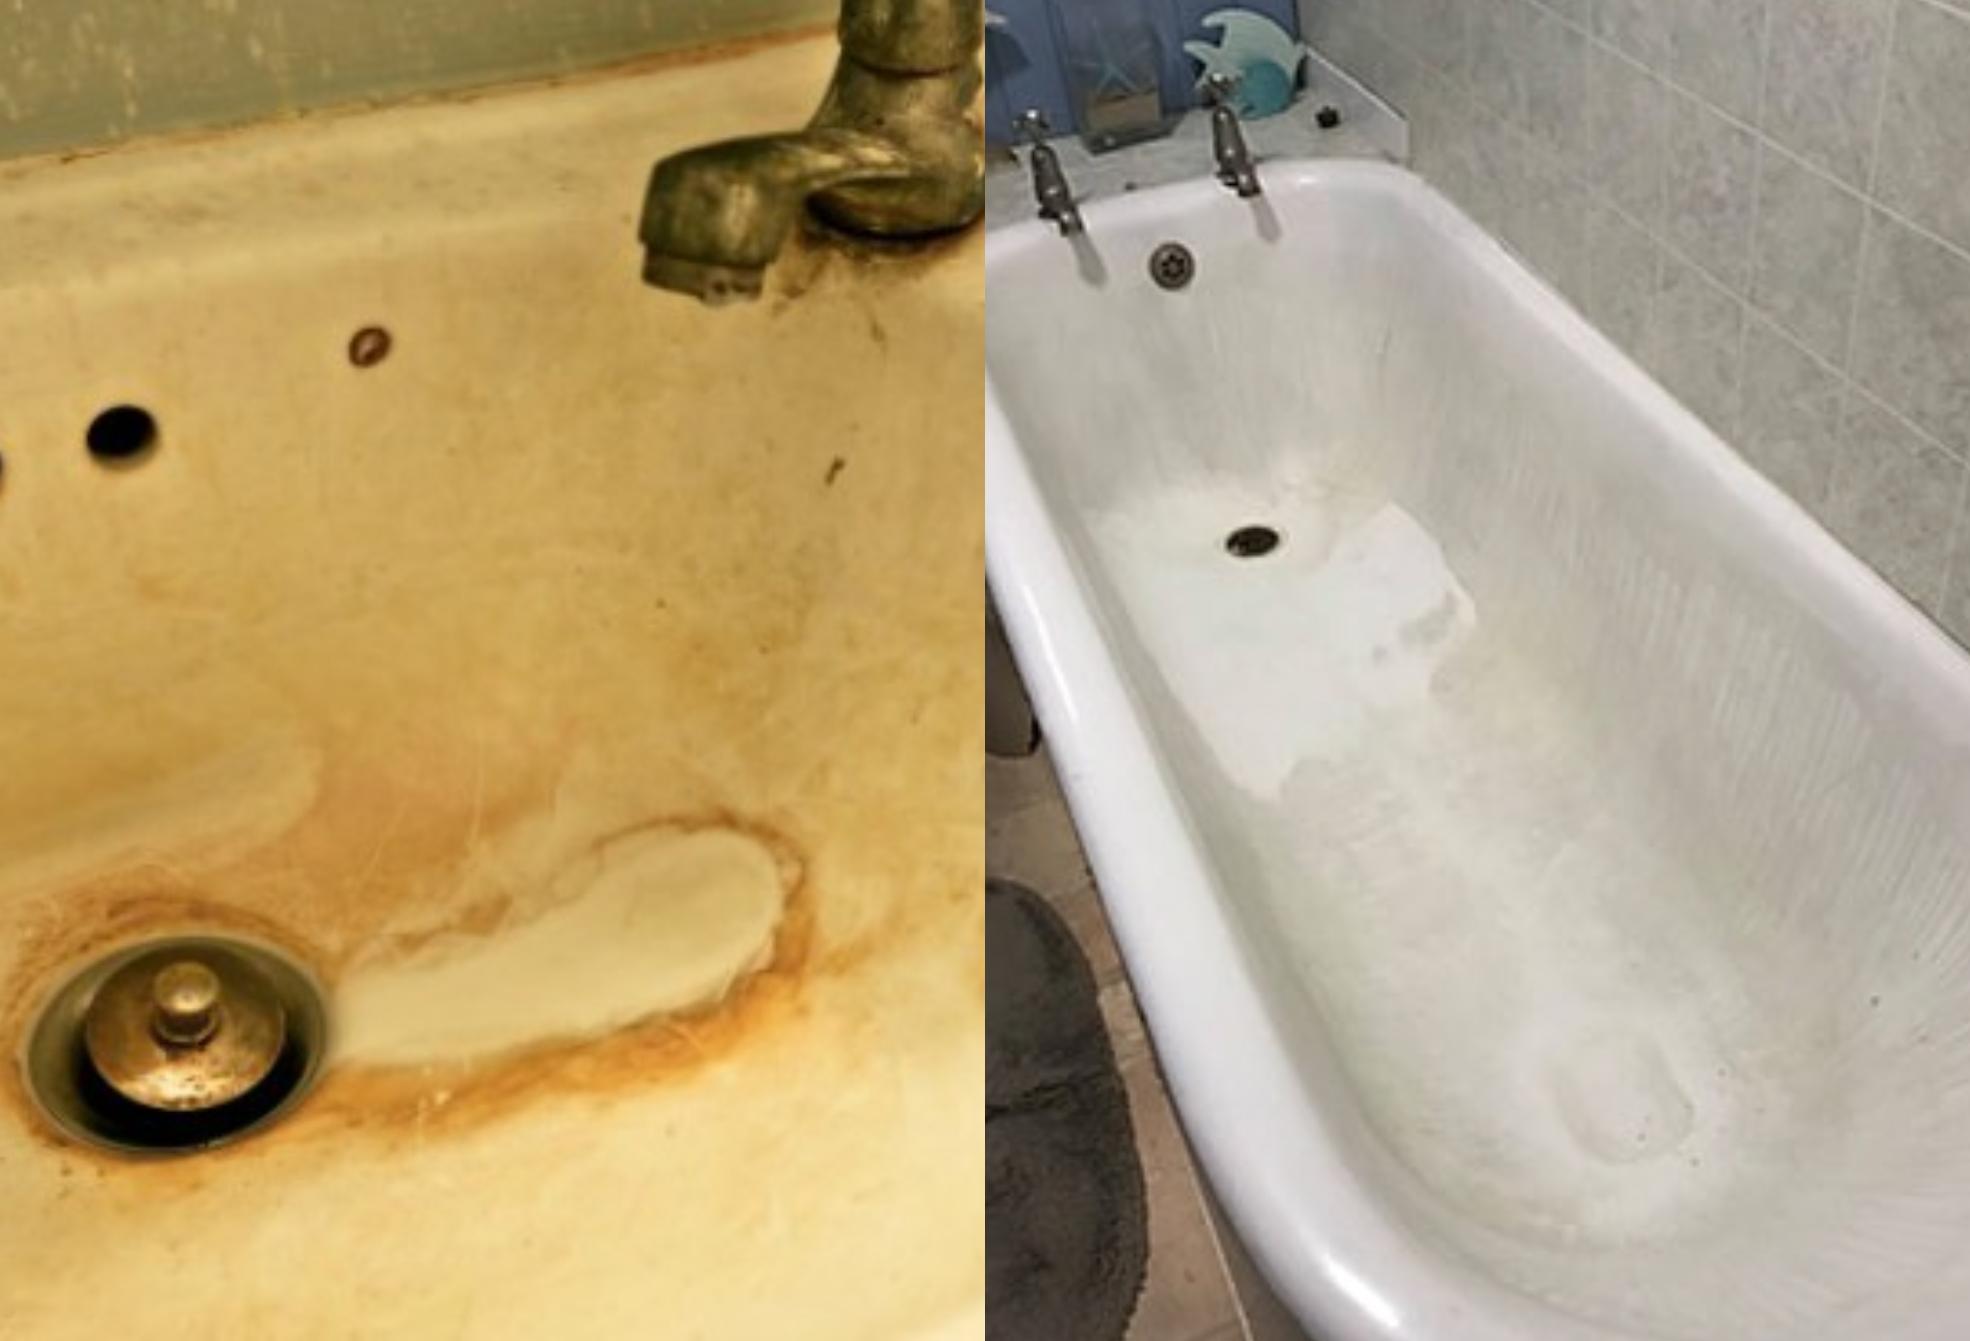 Λεκάνη νιπτήρας μπανιέρα αναπτύσσουν μούχλα άλατα και επικίνδυνα για την υγεία μας μικρόβια – Πόσο συχνά πρέπει να καθαρίζετε το μπάνιο 